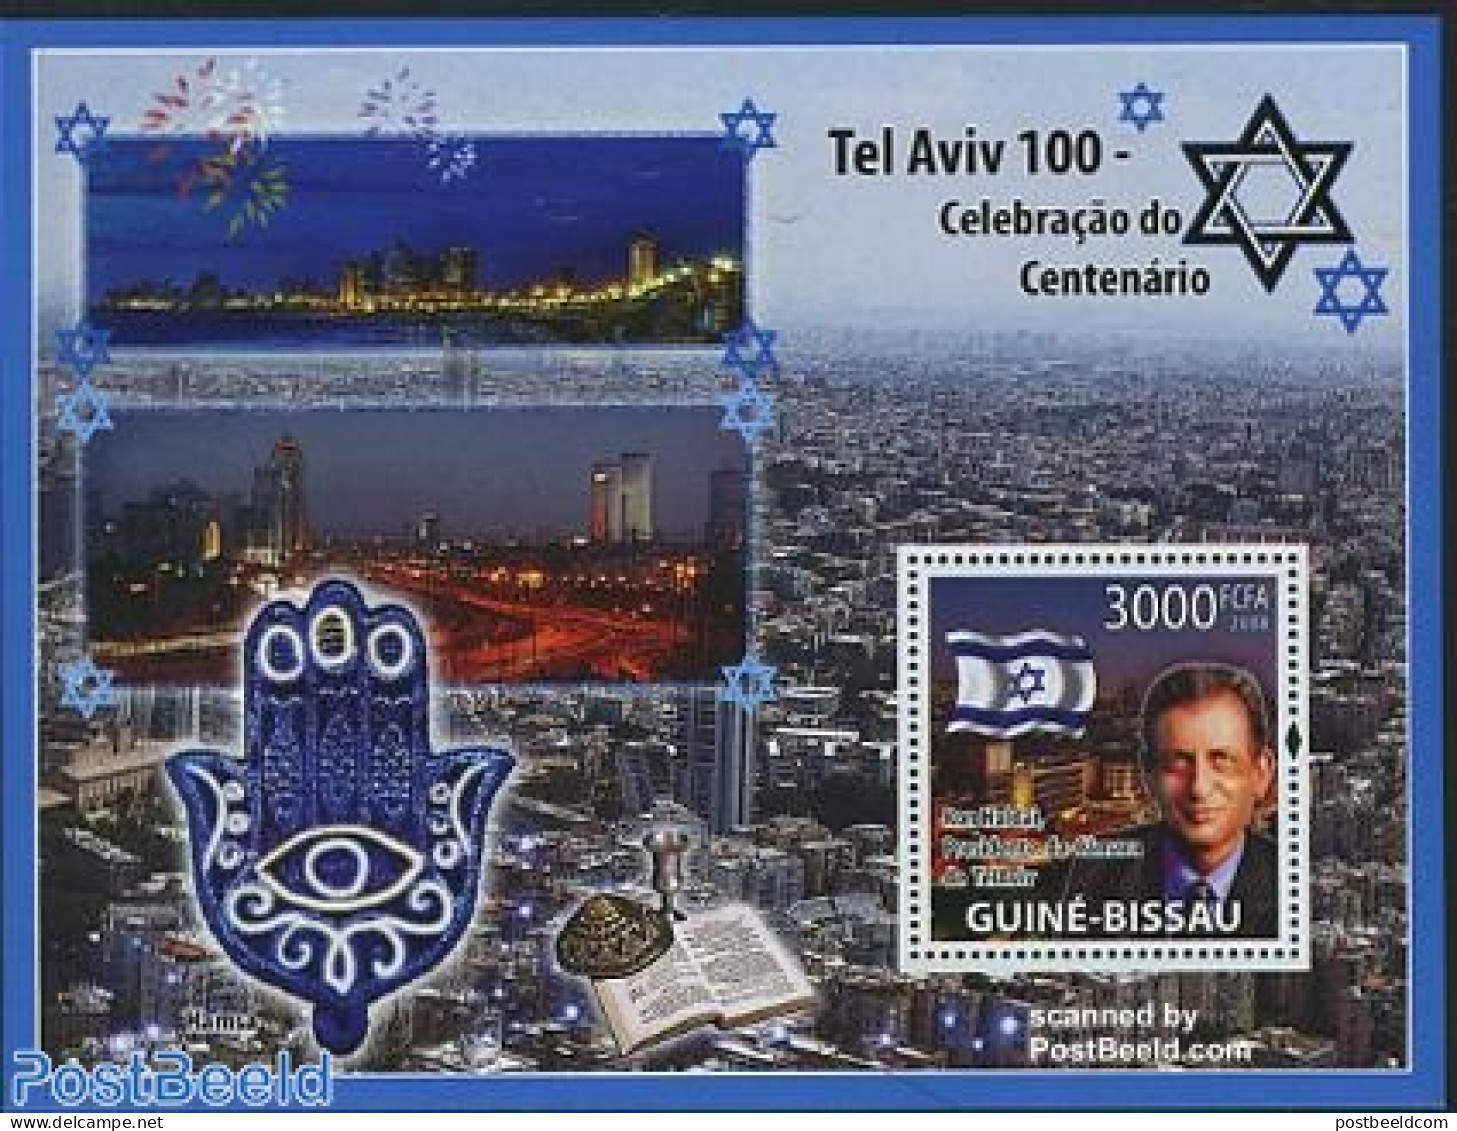 Guinea Bissau 2008 100 Years Tel Aviv S/s, Mint NH, Religion - Judaica - Judaika, Judentum